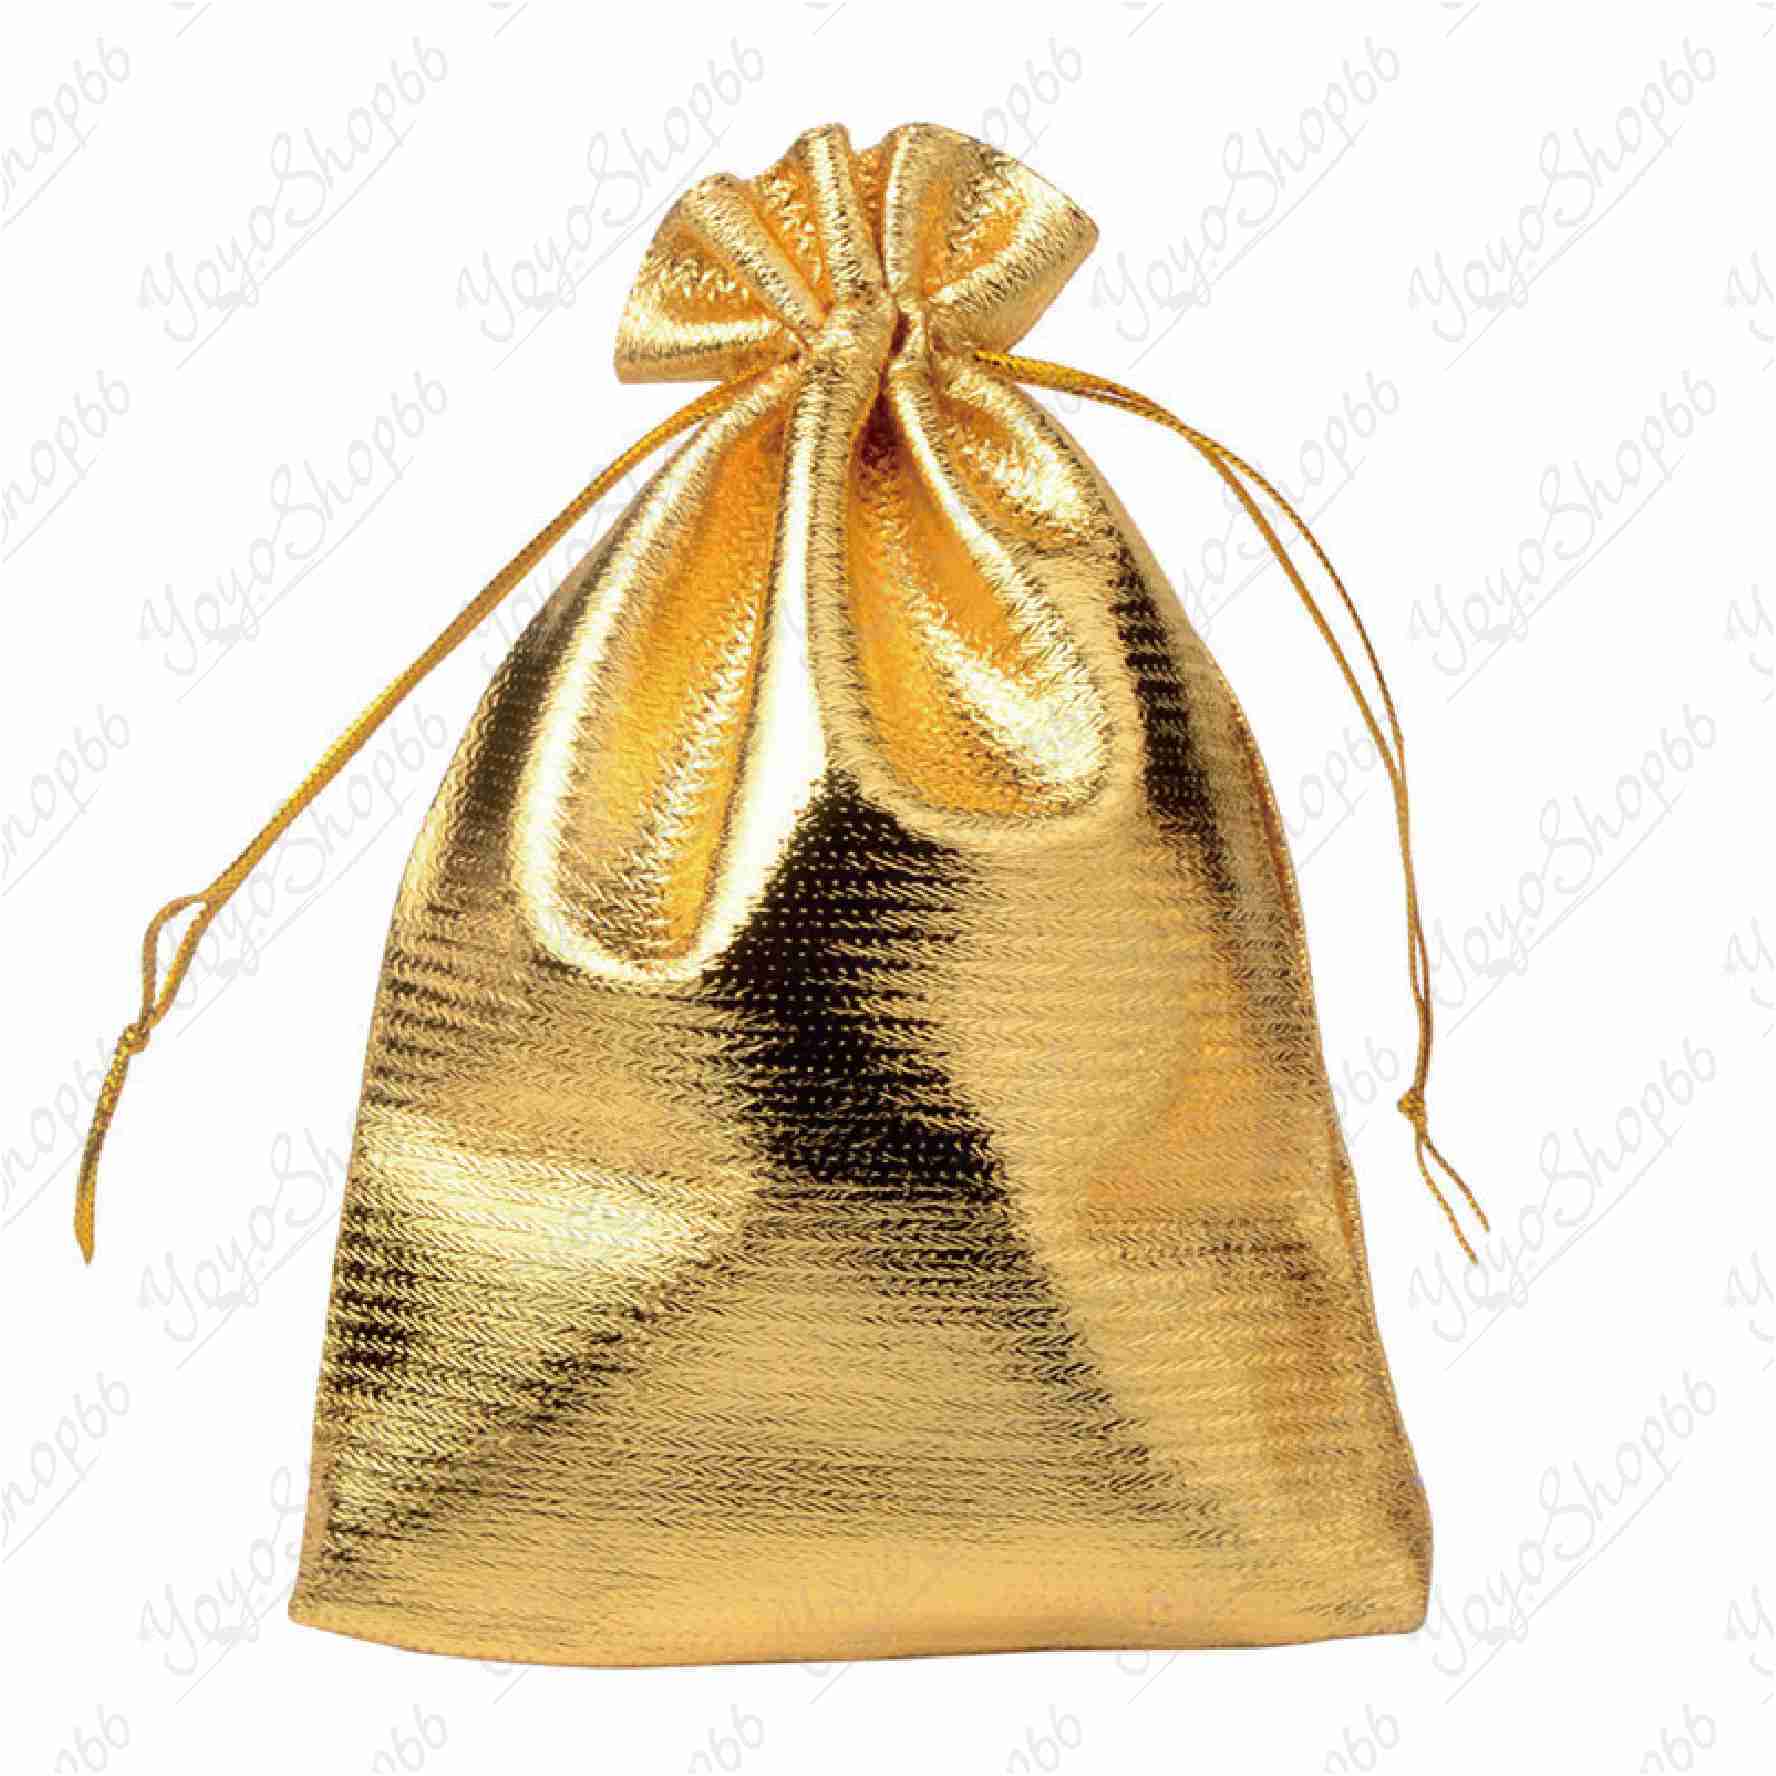 #631【特大17*23CM(1入) 】首飾包裝袋(1入) 金銀布袋 束口抽繩袋 高檔首飾袋 金袋 禮品袋【愛尚生活】